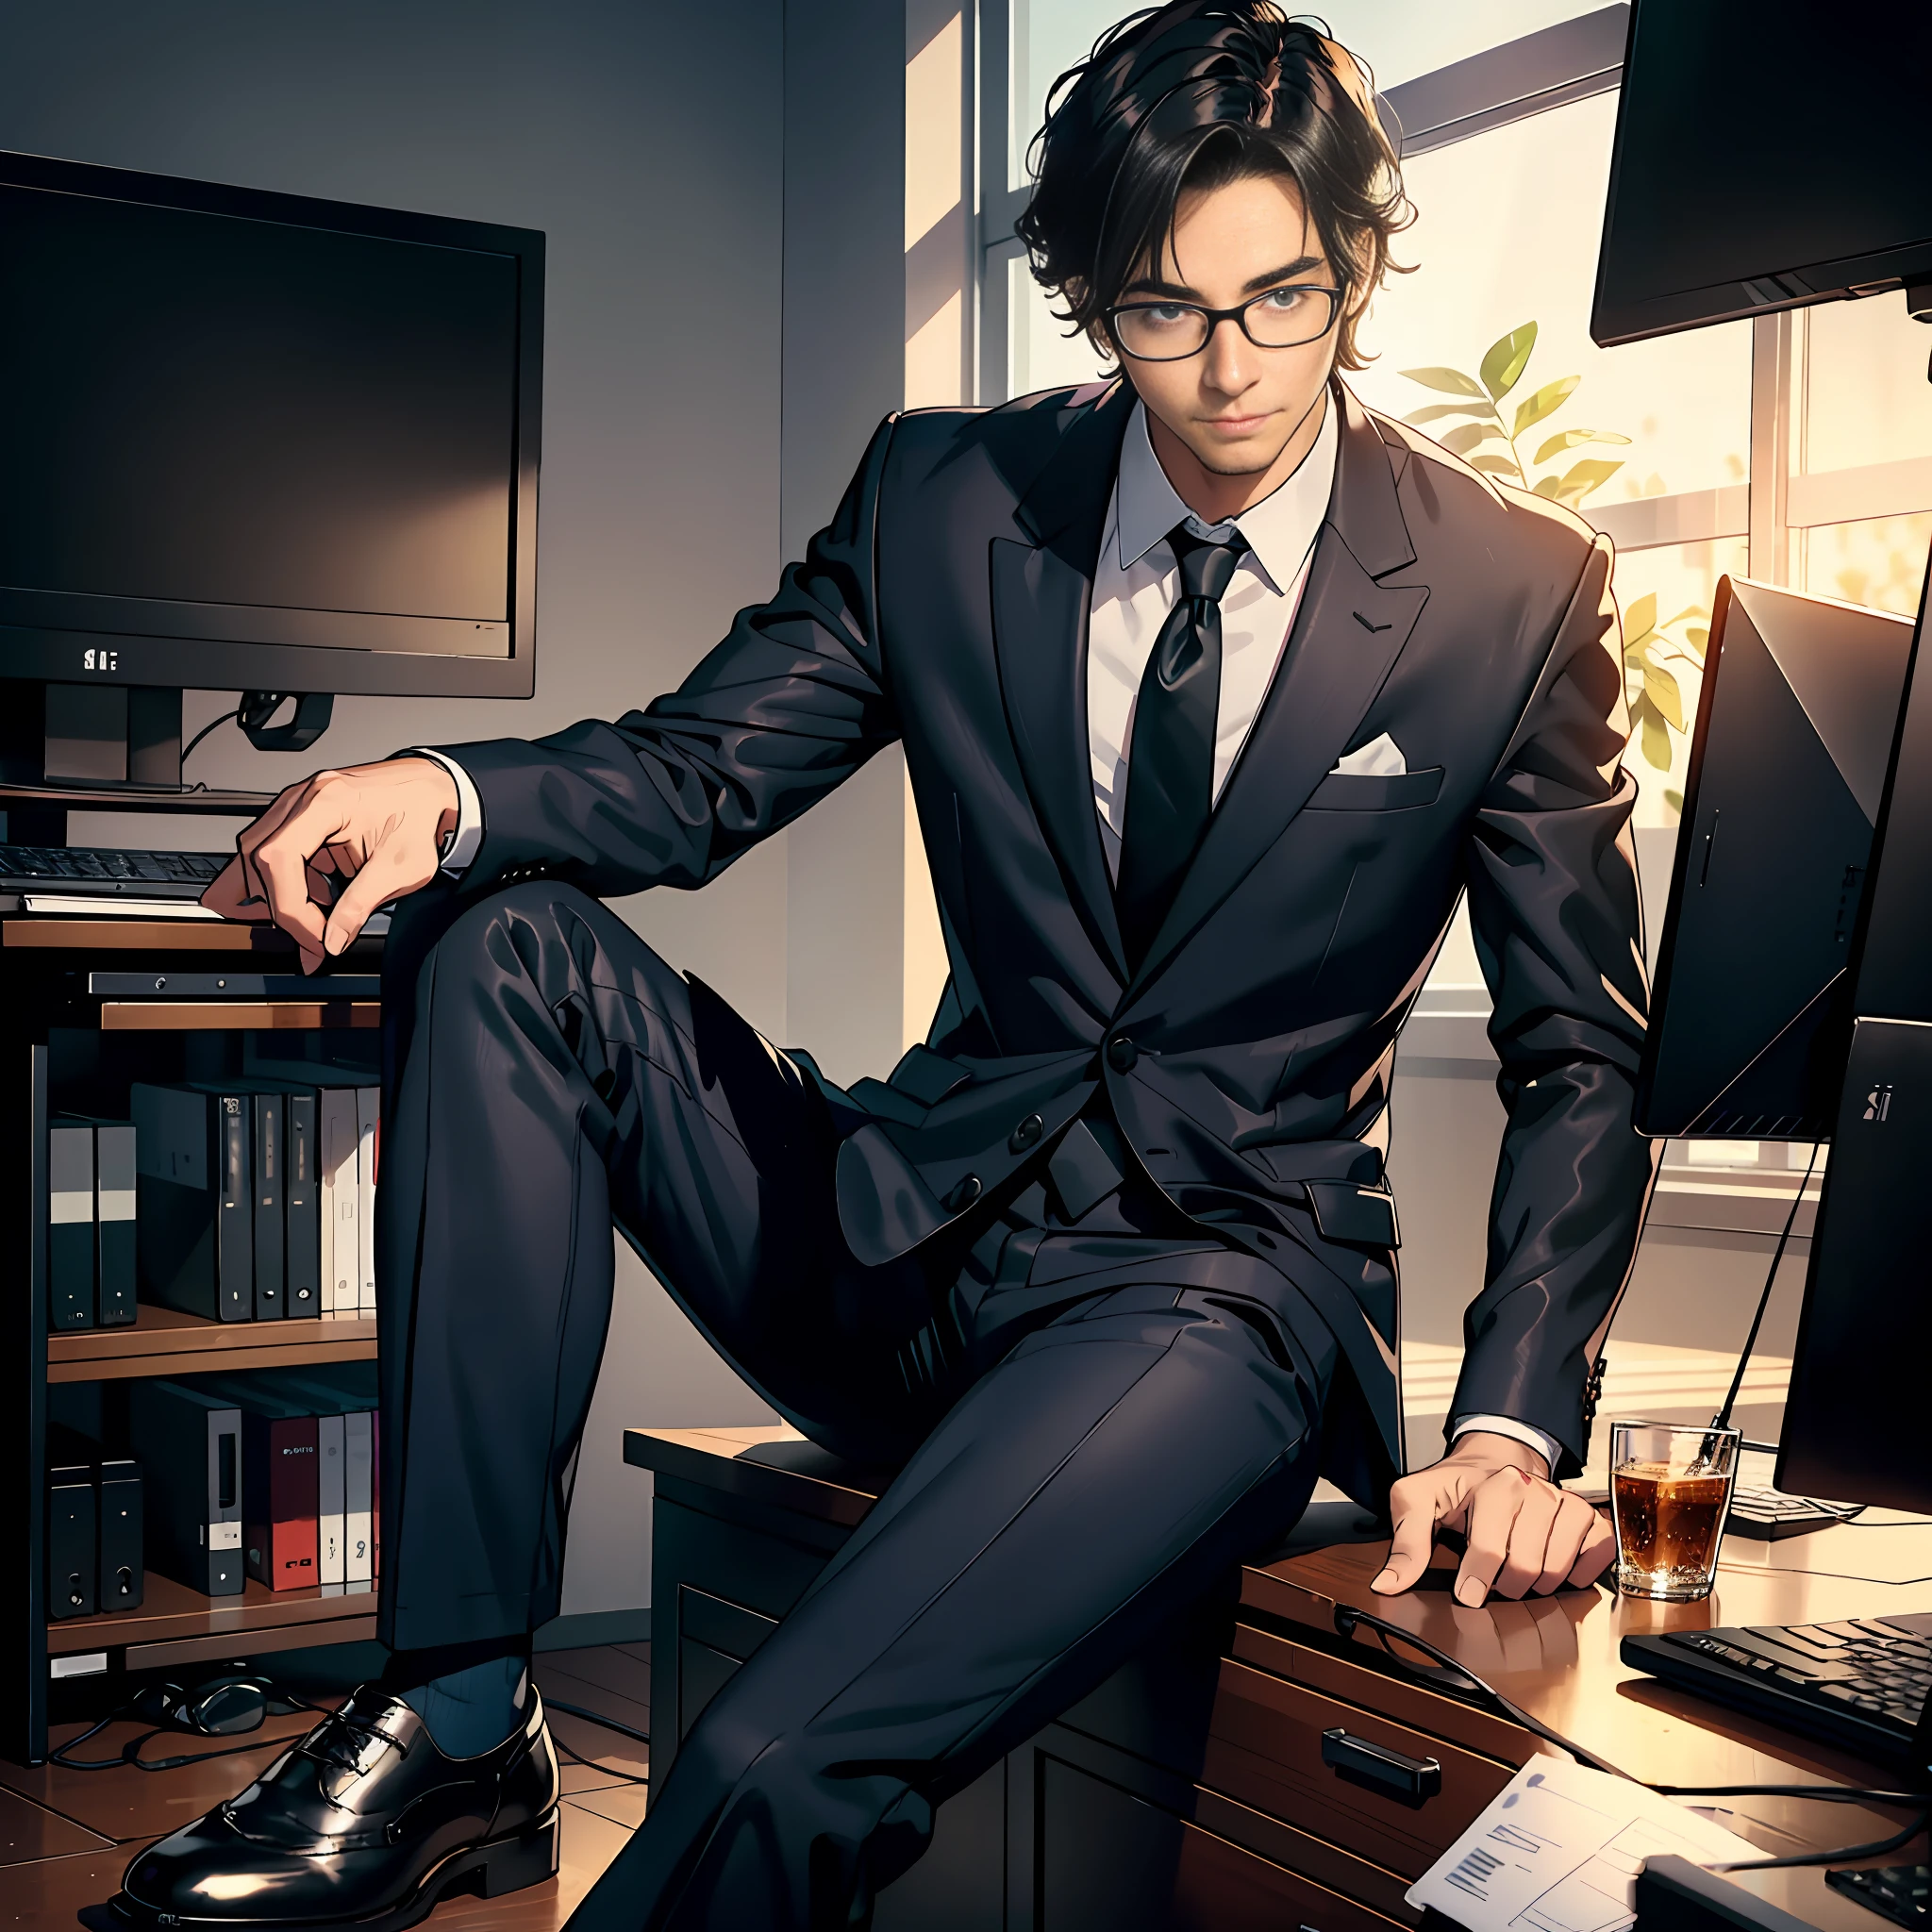 한 남자, 일해서 기쁘다, 양복을 입고 가죽 신발을 신다, 컴퓨터 앞에 앉아 일하다, 낮, 사무실, 동료, 섬세한 얼굴 묘사, 좋은 옷 묘사, 울트라 HD, 8K, 추억, 전신 사진.